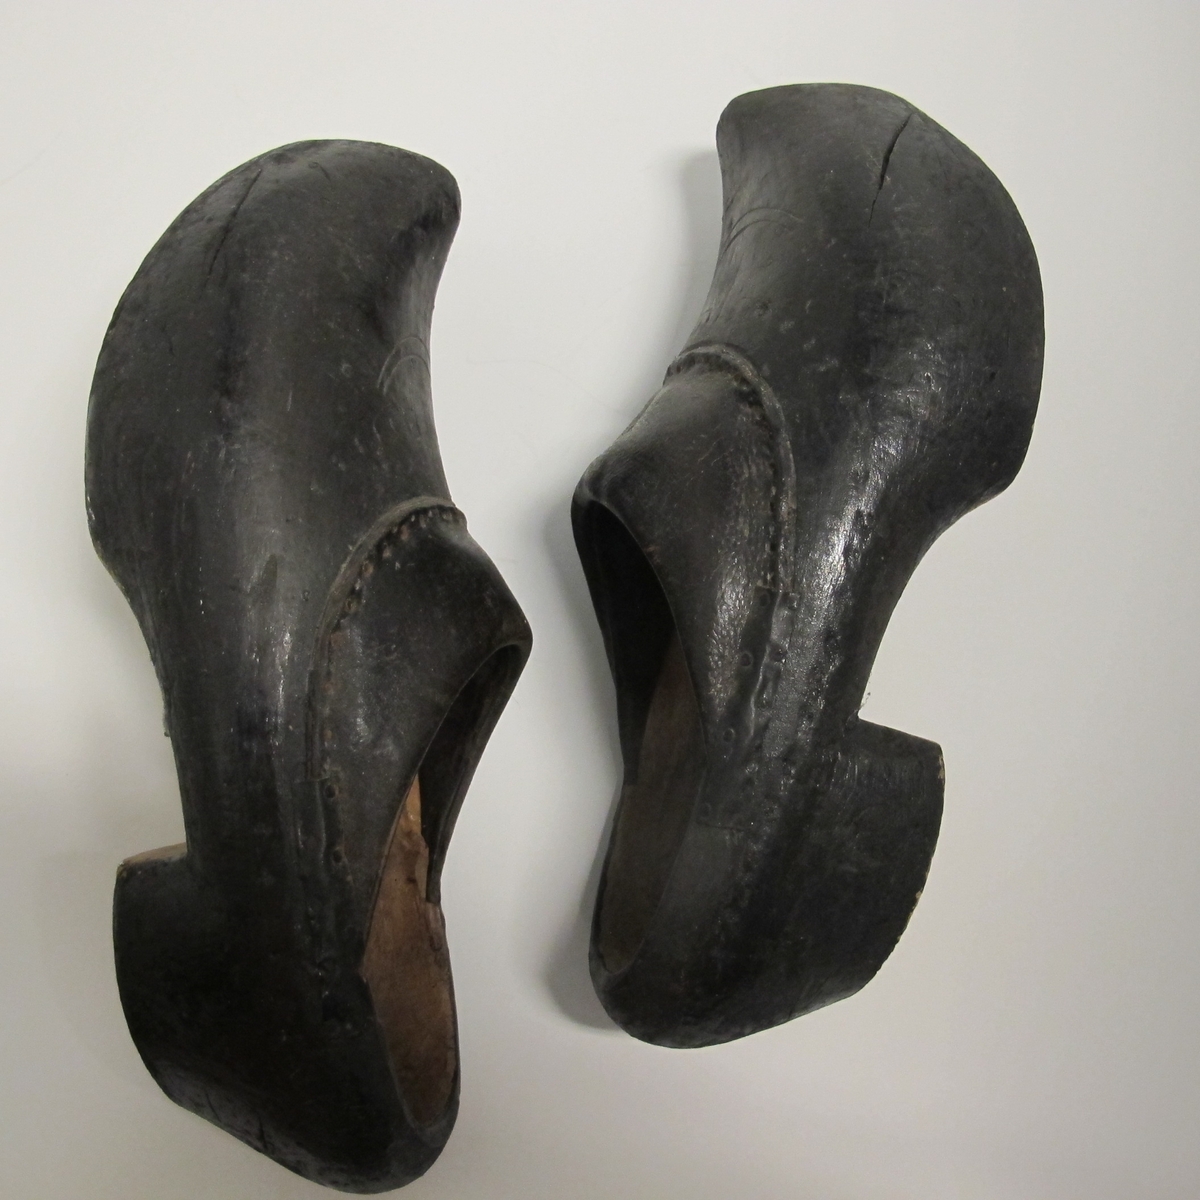 Skoene er sorte, med tre i bunn og i deler av kappen, der tuppen gå opp i en spiss foran. Den har noen innrissninger som ikke er tydet. Bare stykket nærmest vristen er av lær.